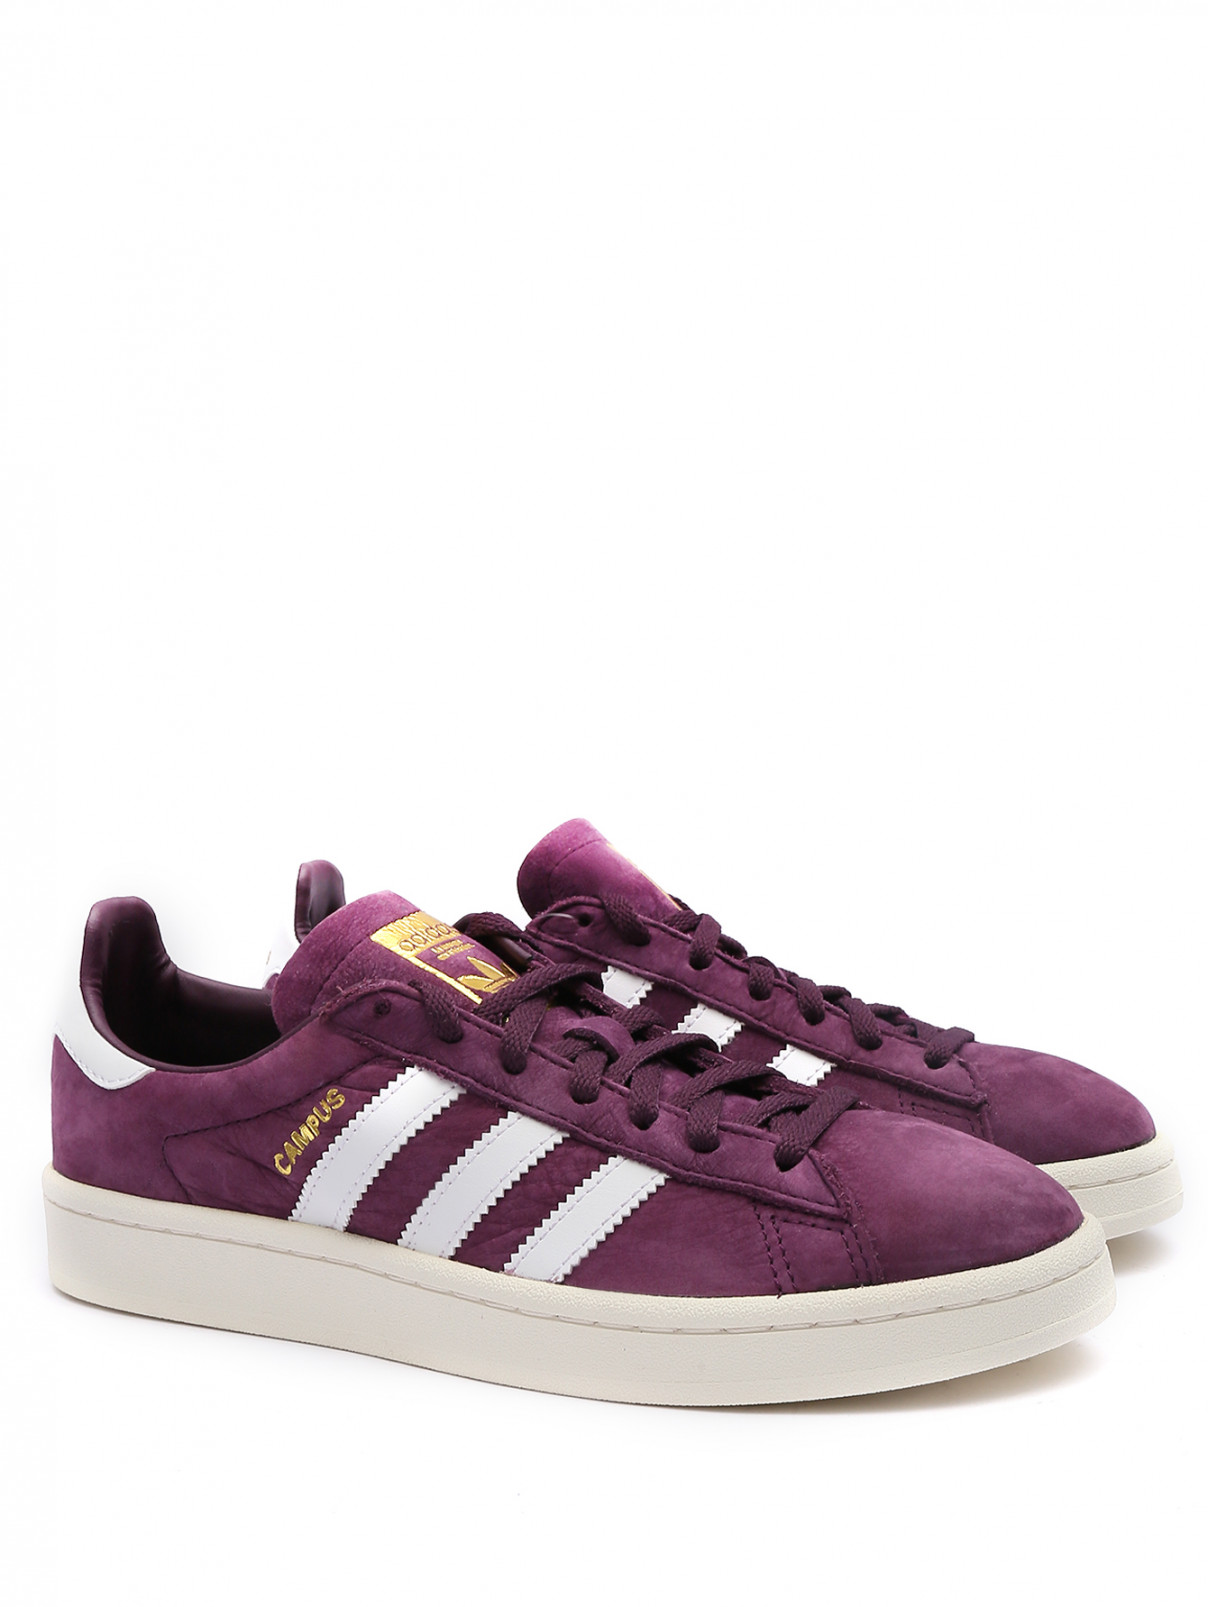 Кеды из кожи на контрастной подошве Adidas Originals  –  Общий вид  – Цвет:  Фиолетовый